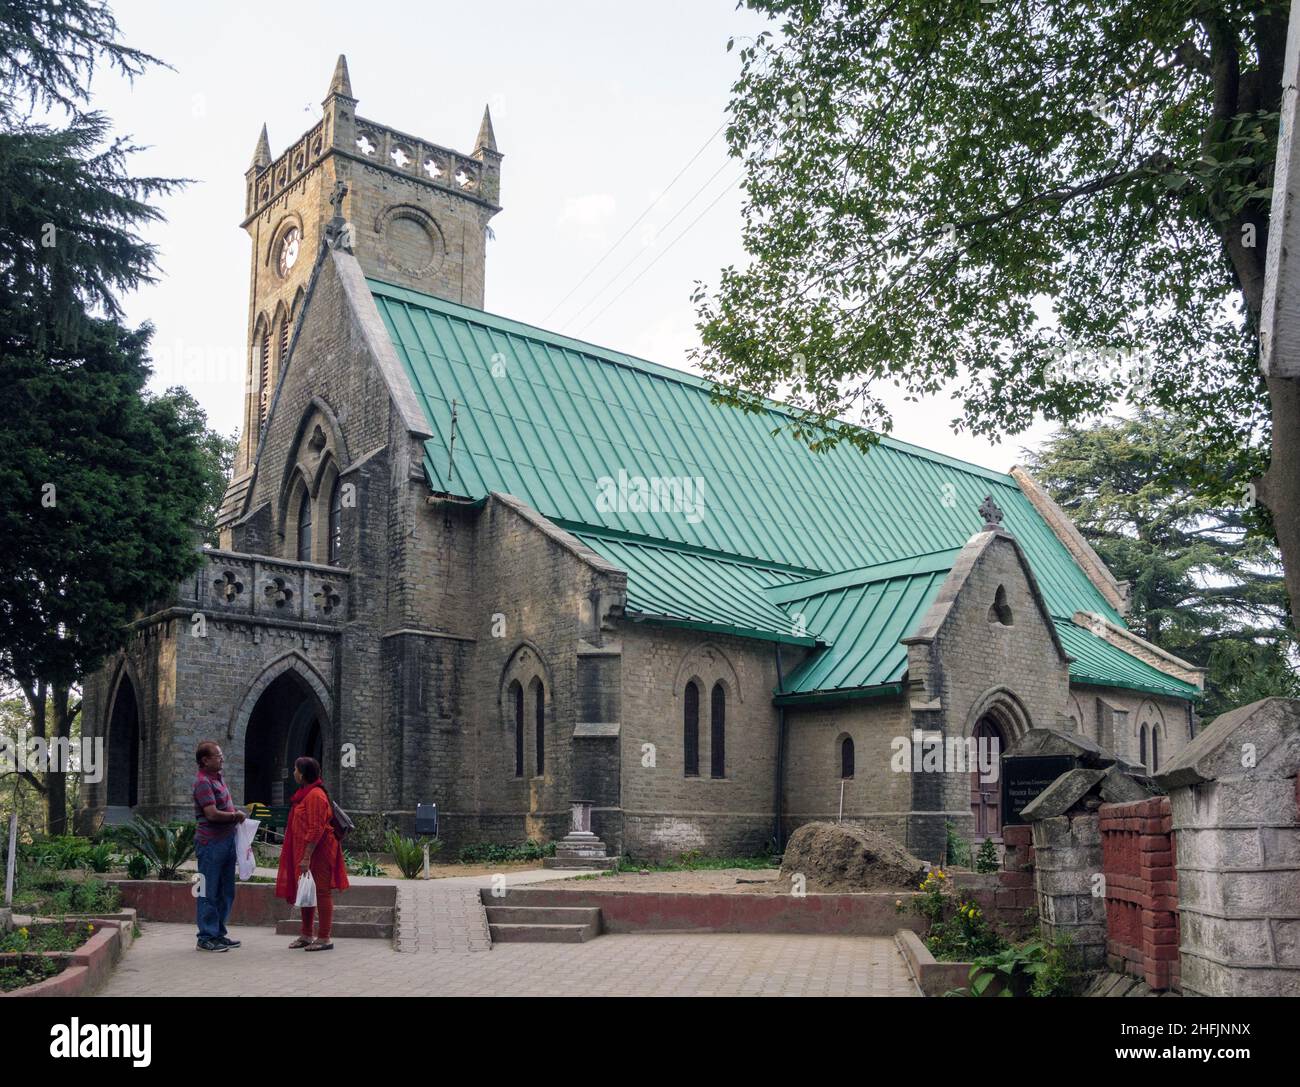 Indien, Distrikt Solan, Himachal Pradesh. Kasauli Stadt wurde von British Raj im Jahr 1842 als koloniale Bergstation gegründet. Anglikanische Christ Church aus dem 19th. Jahrhundert Stockfoto